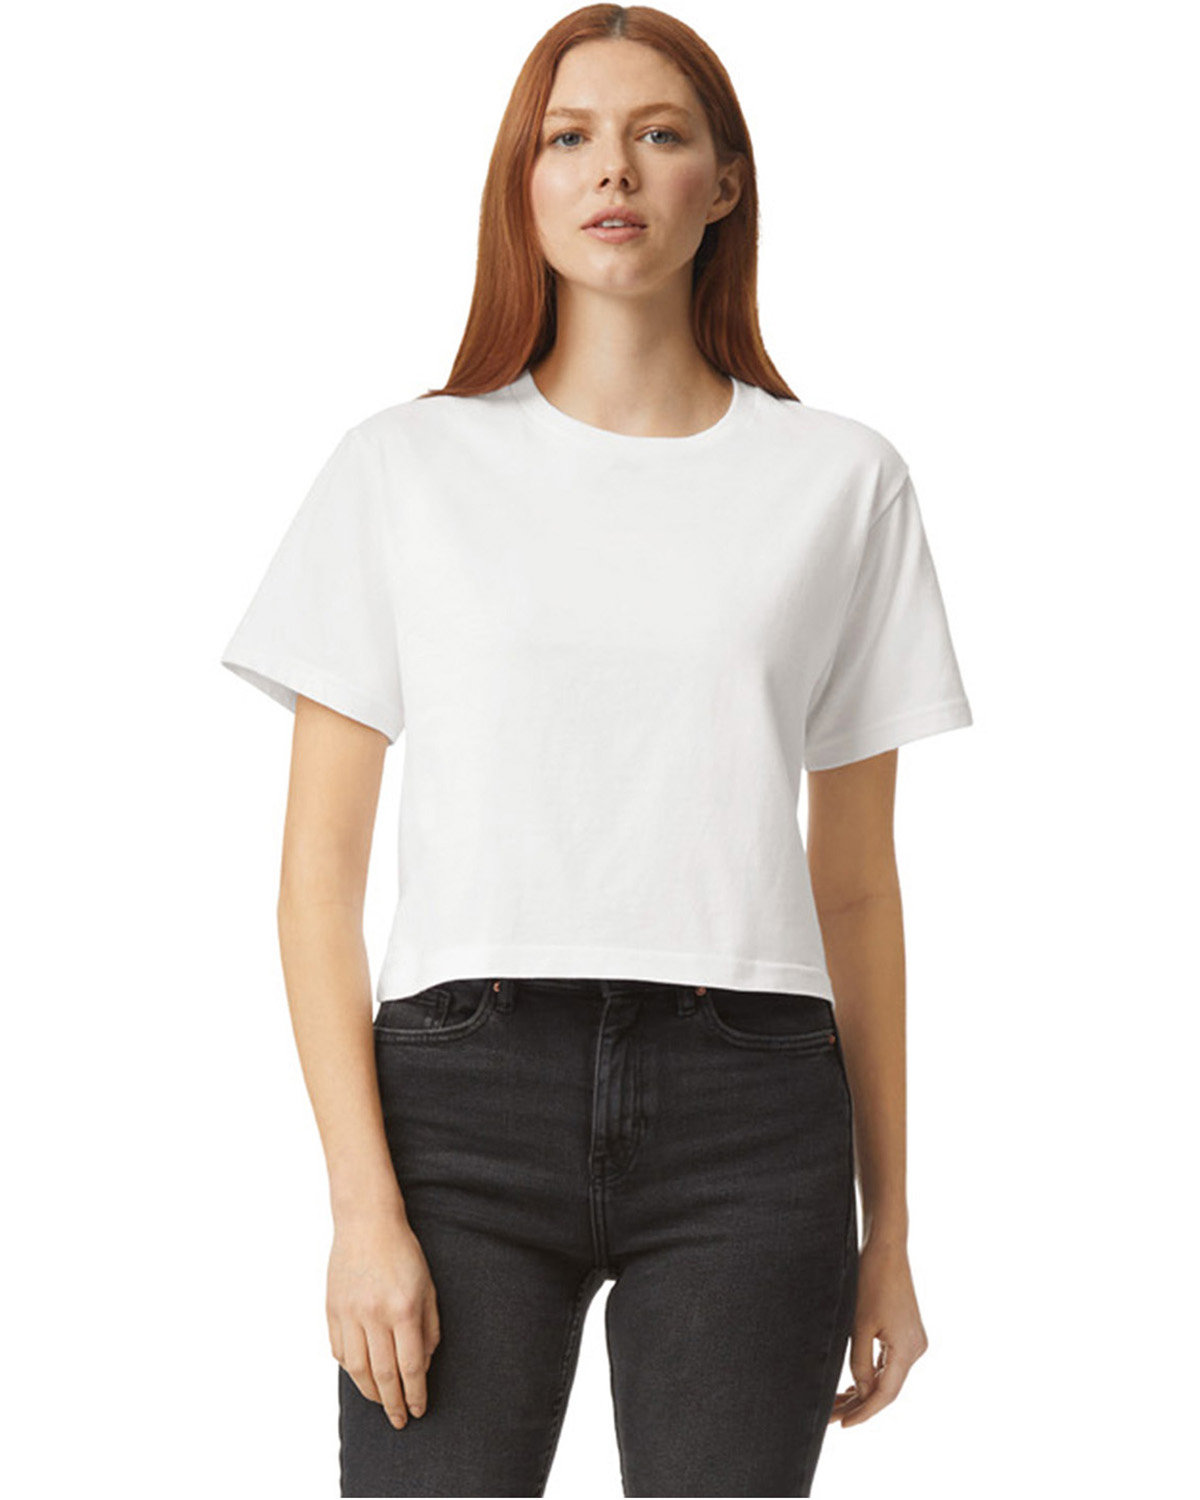 LADIES OXFORD NON-IRON POINT COLLAR DRESS SHIRT - WHITE - 5978